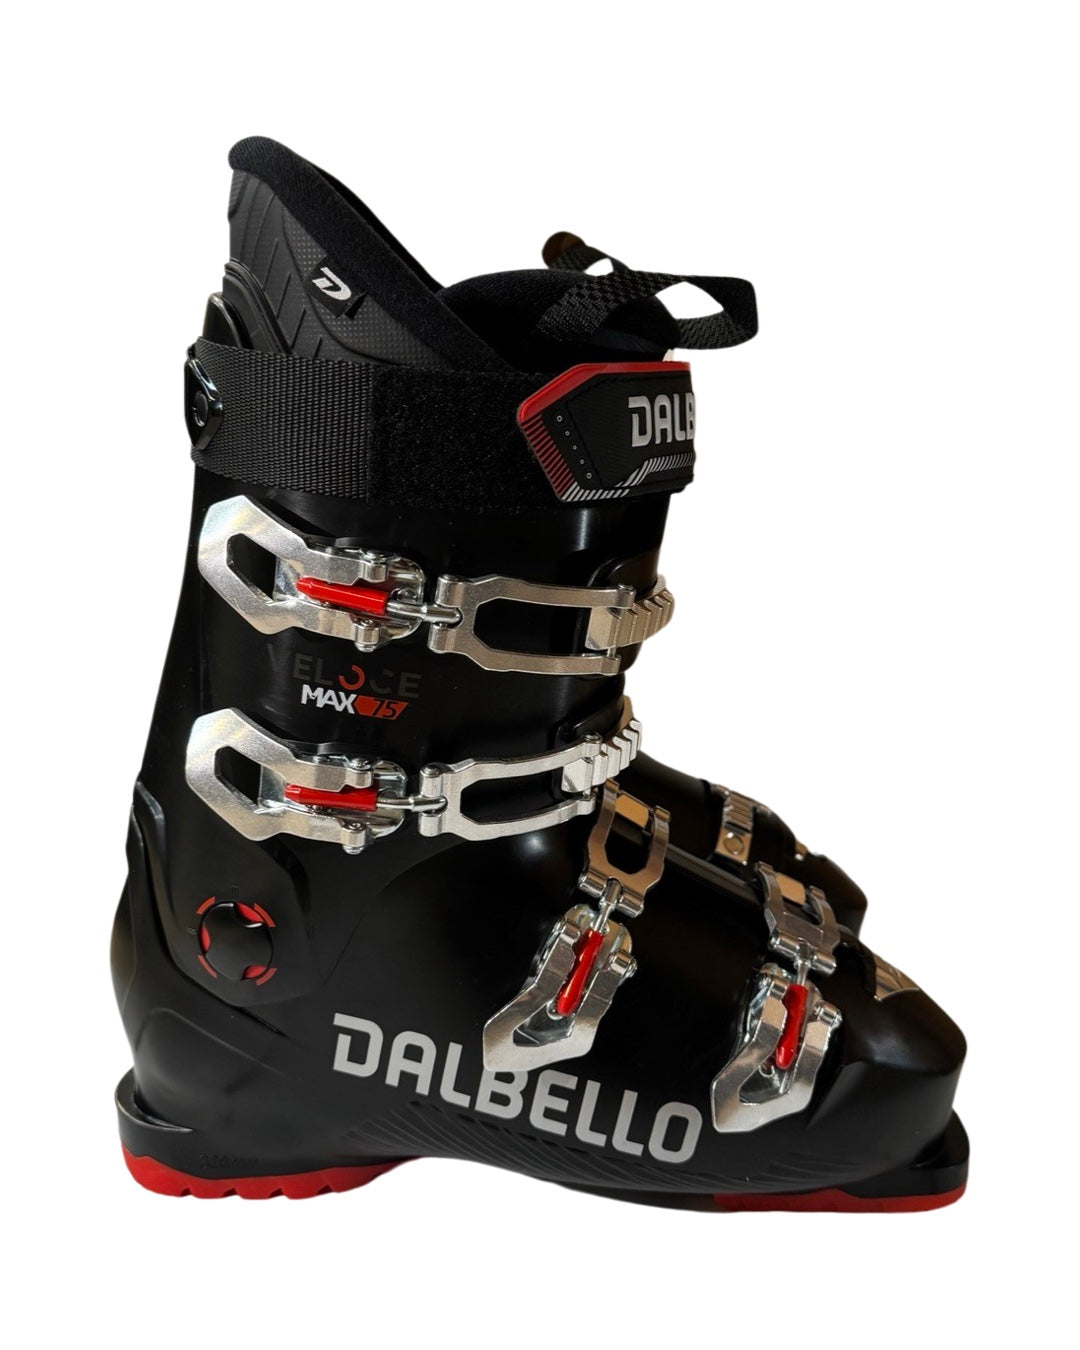 Dalbello Veloce Max 75